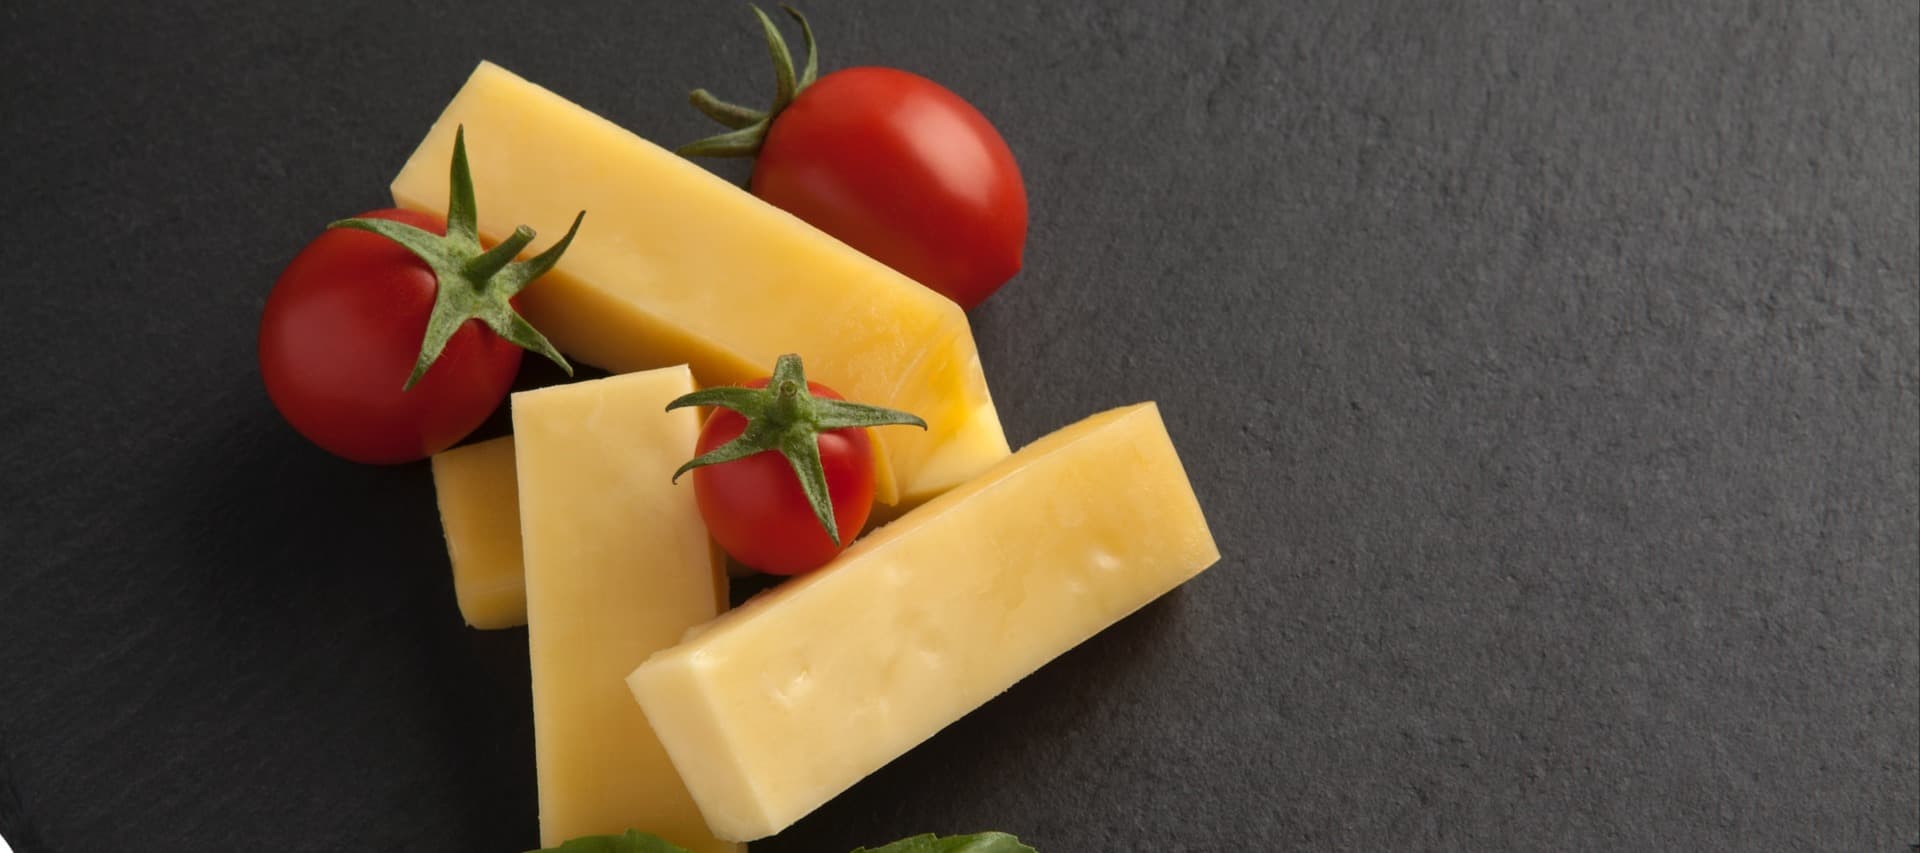 Фото новости: "Сыр стал главным драйвером роста продаж продуктов собственных марок"